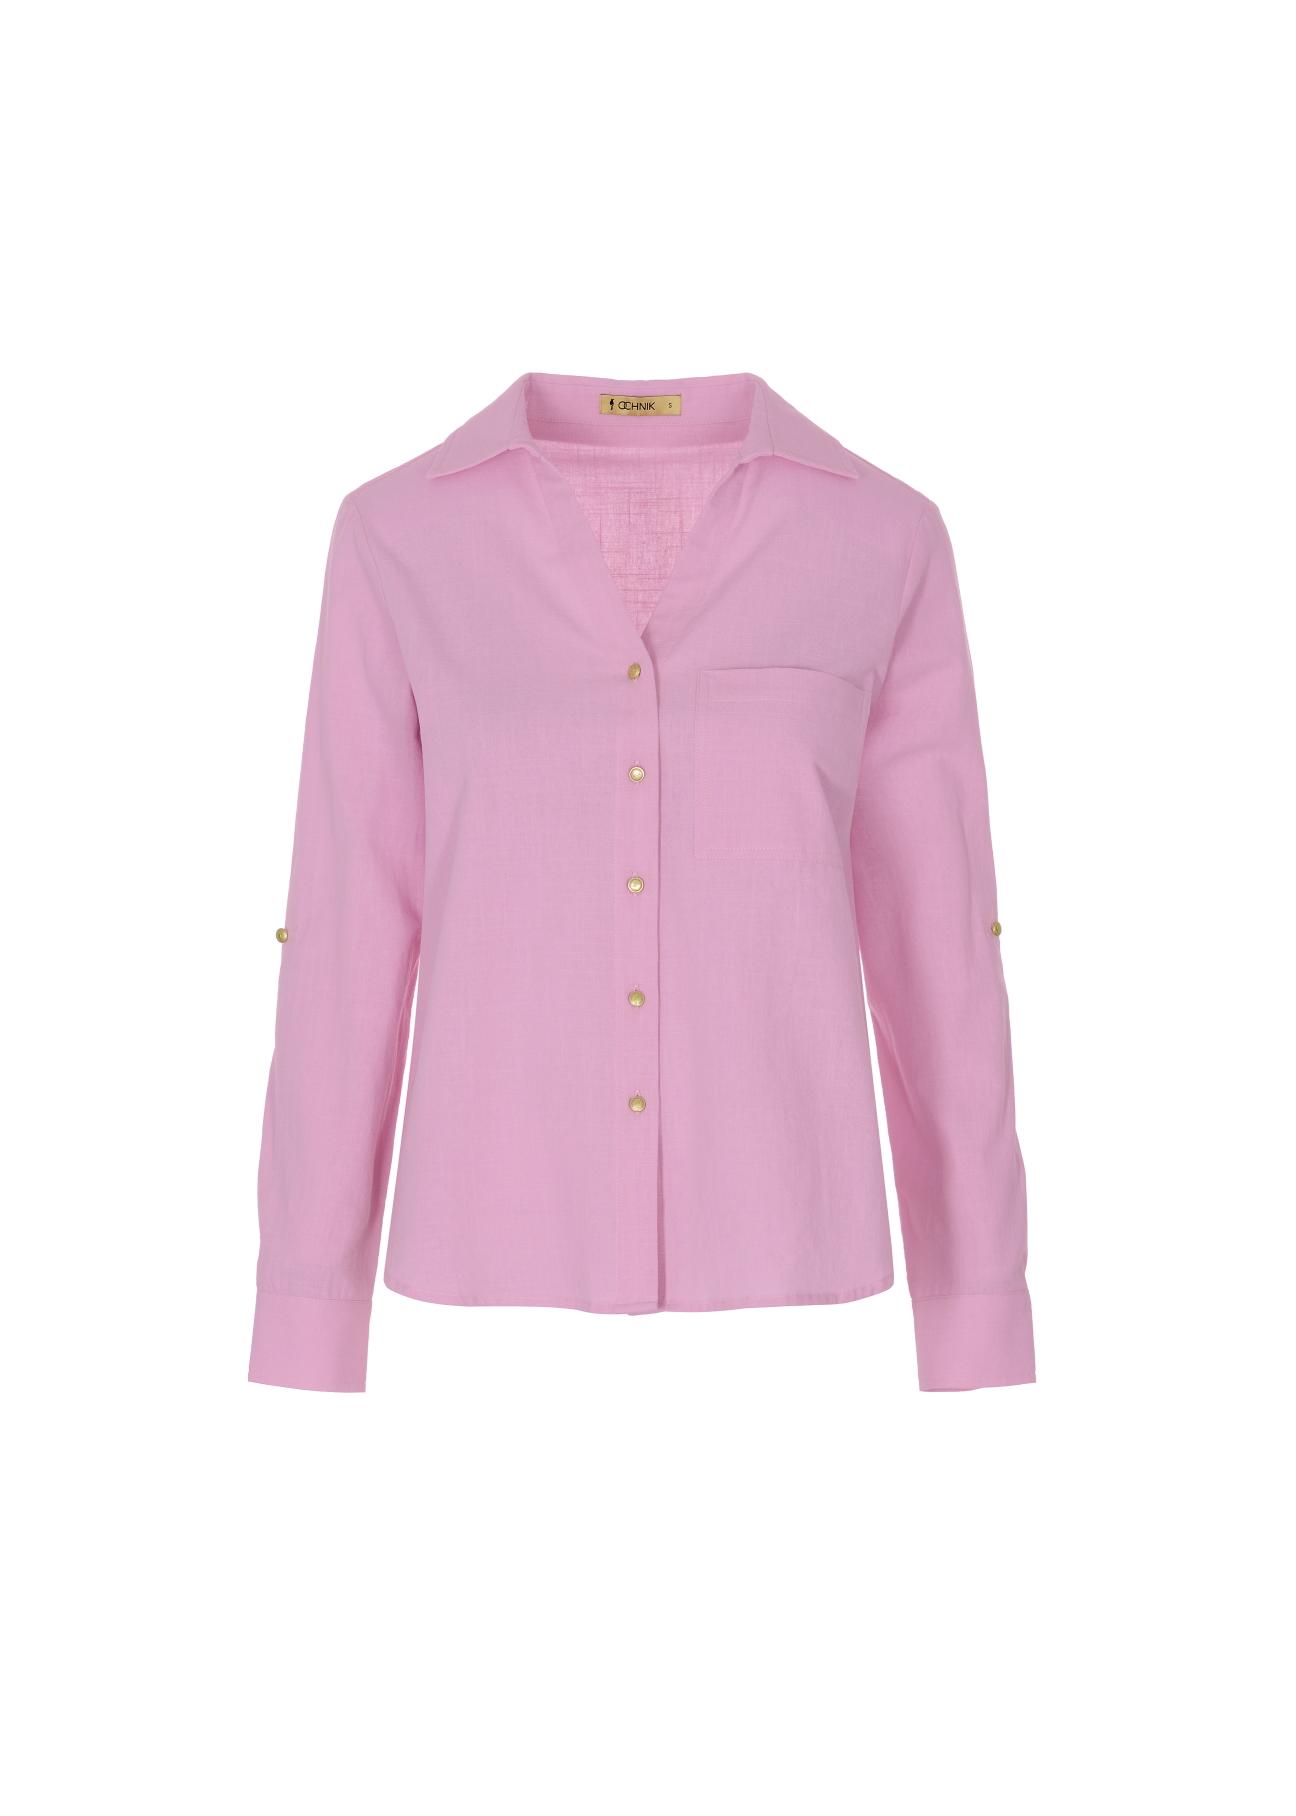 Różowa koszula bawełniana damska KOSDT-0092-34(W22)